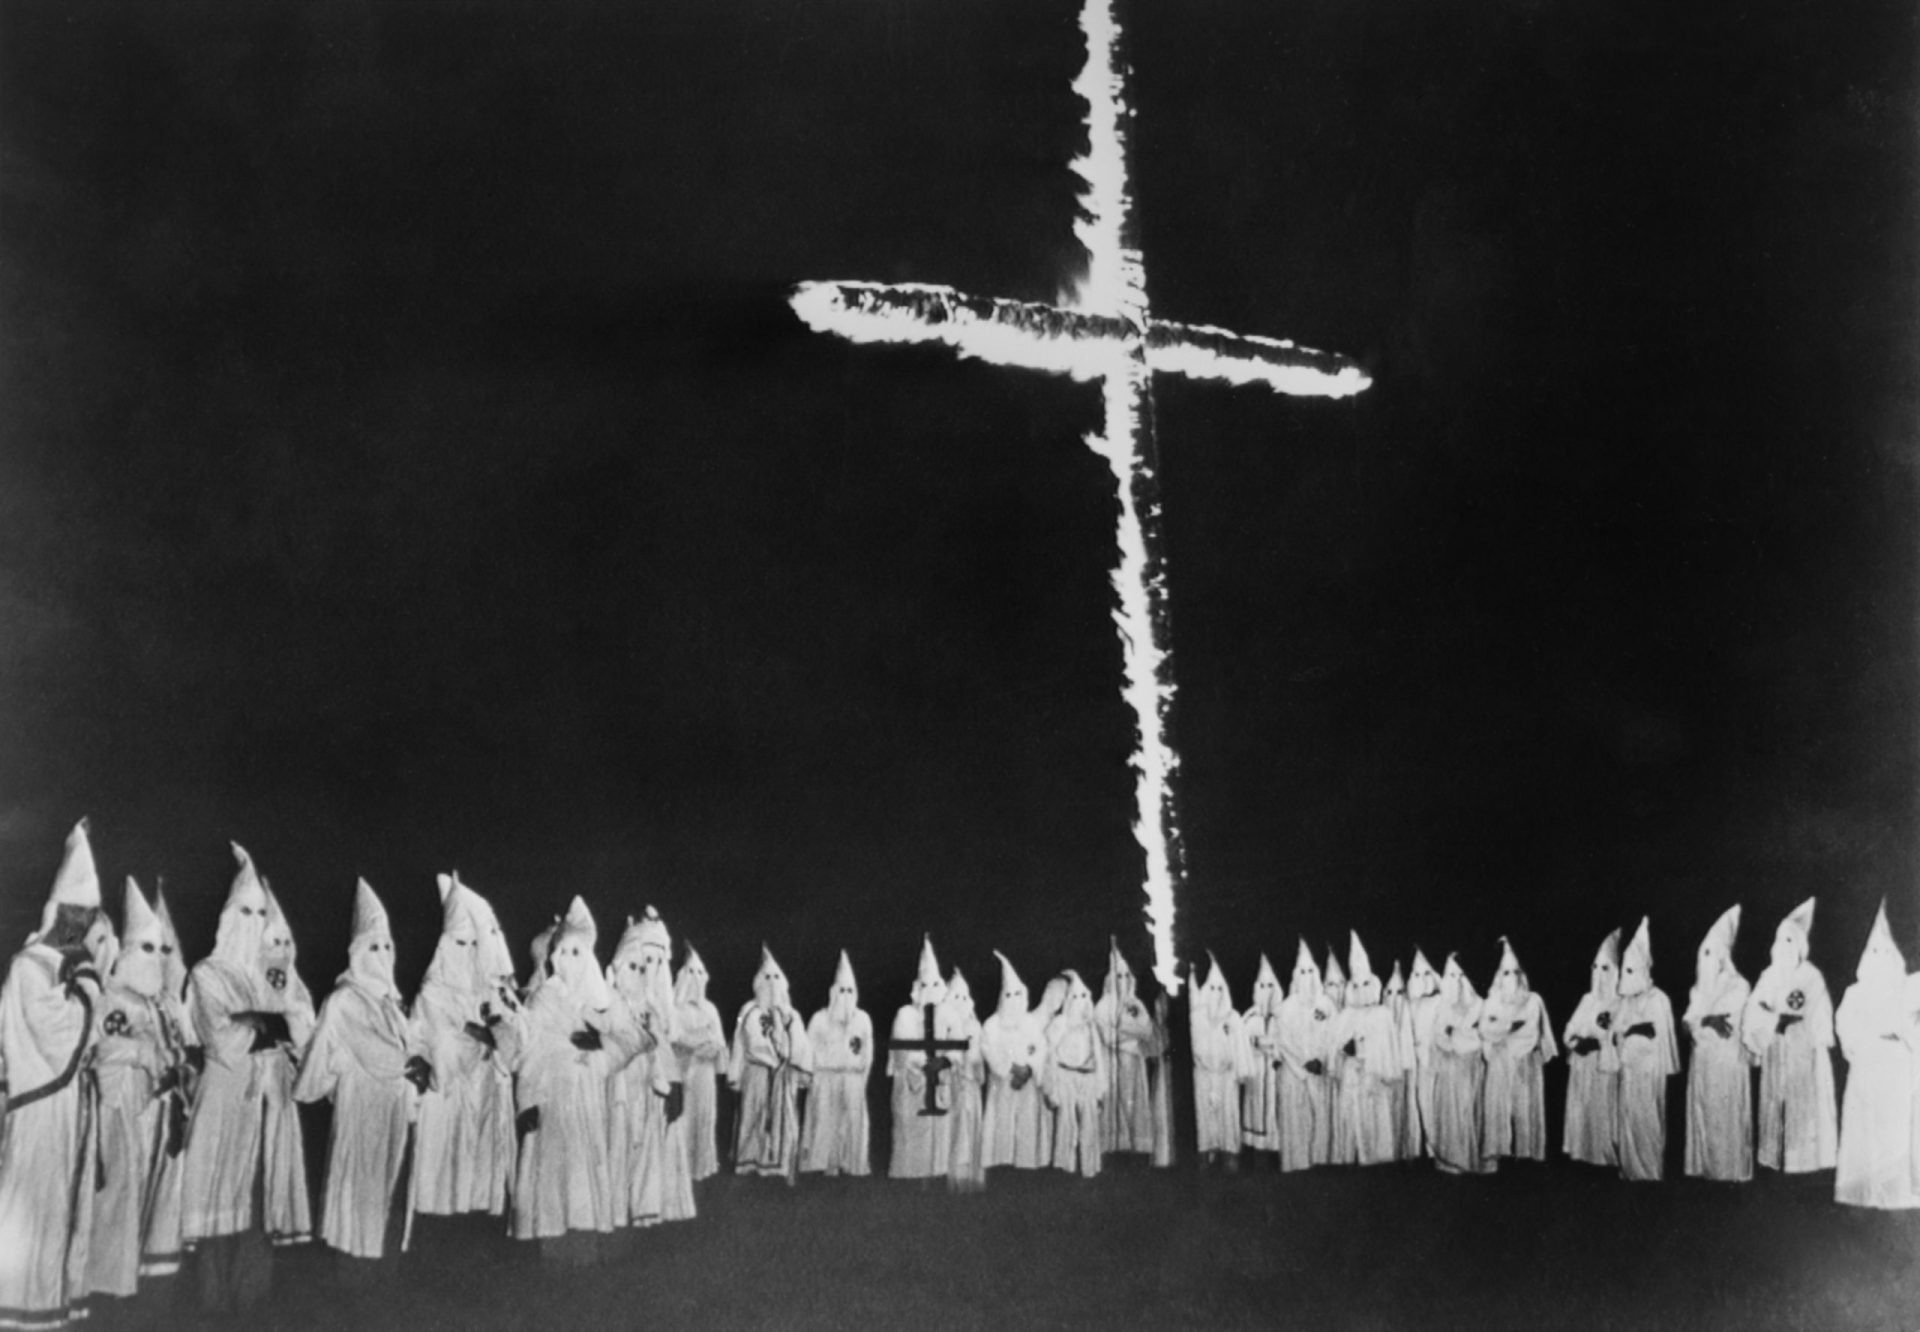 Anonymous revelam nomes de membro do Ku Klux Klan